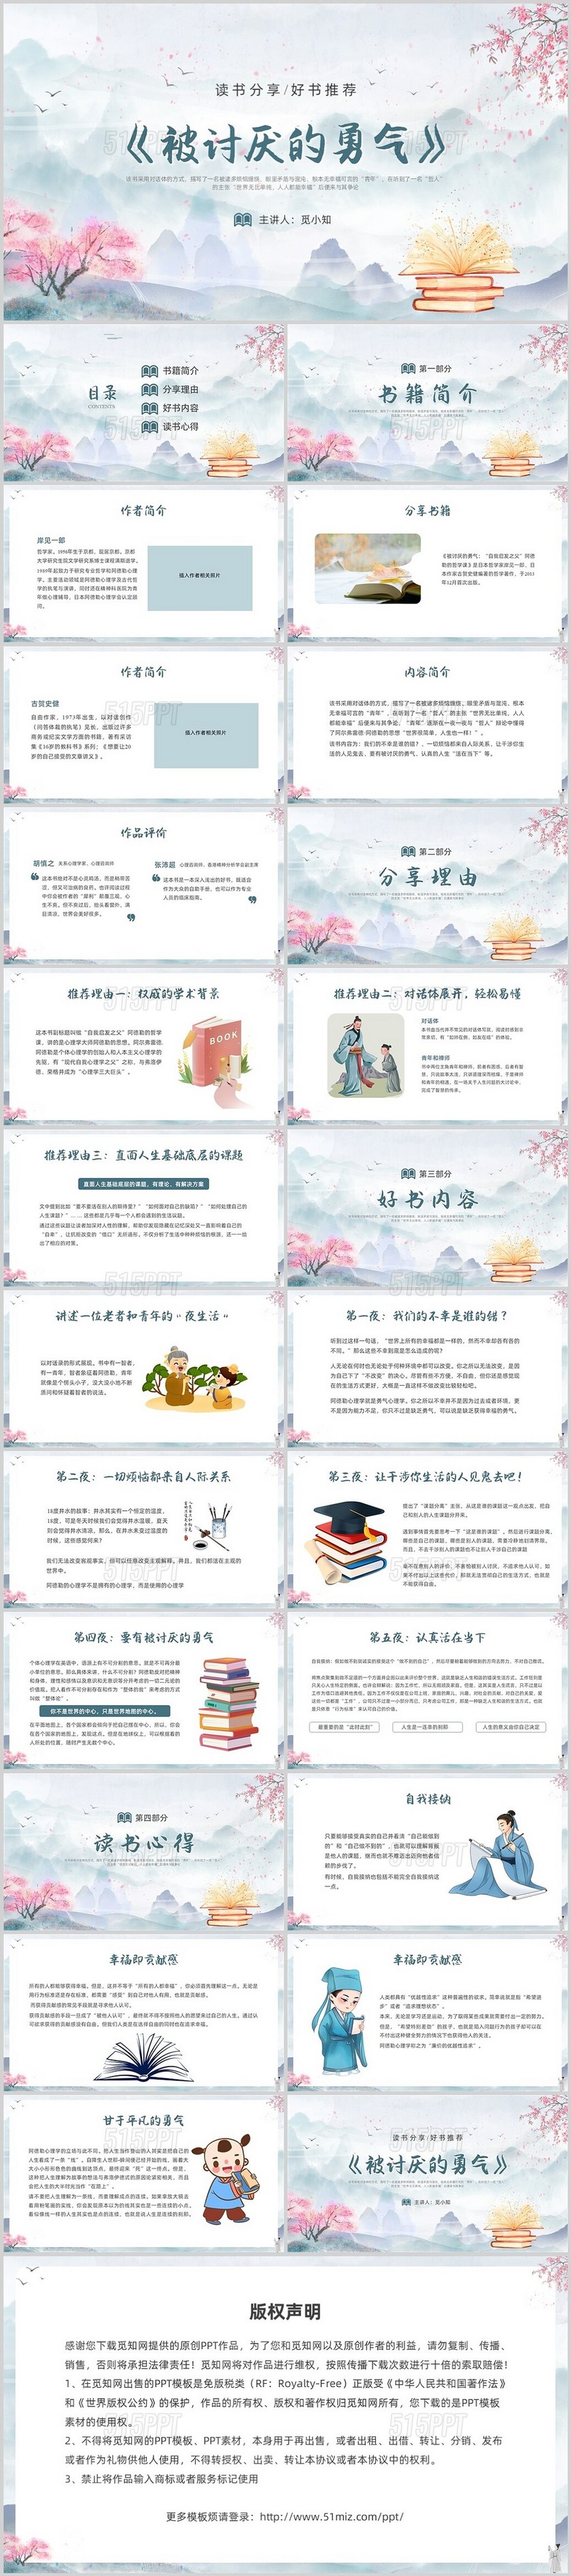 中国风水墨水彩被讨厌的勇气图书分享PPT课件